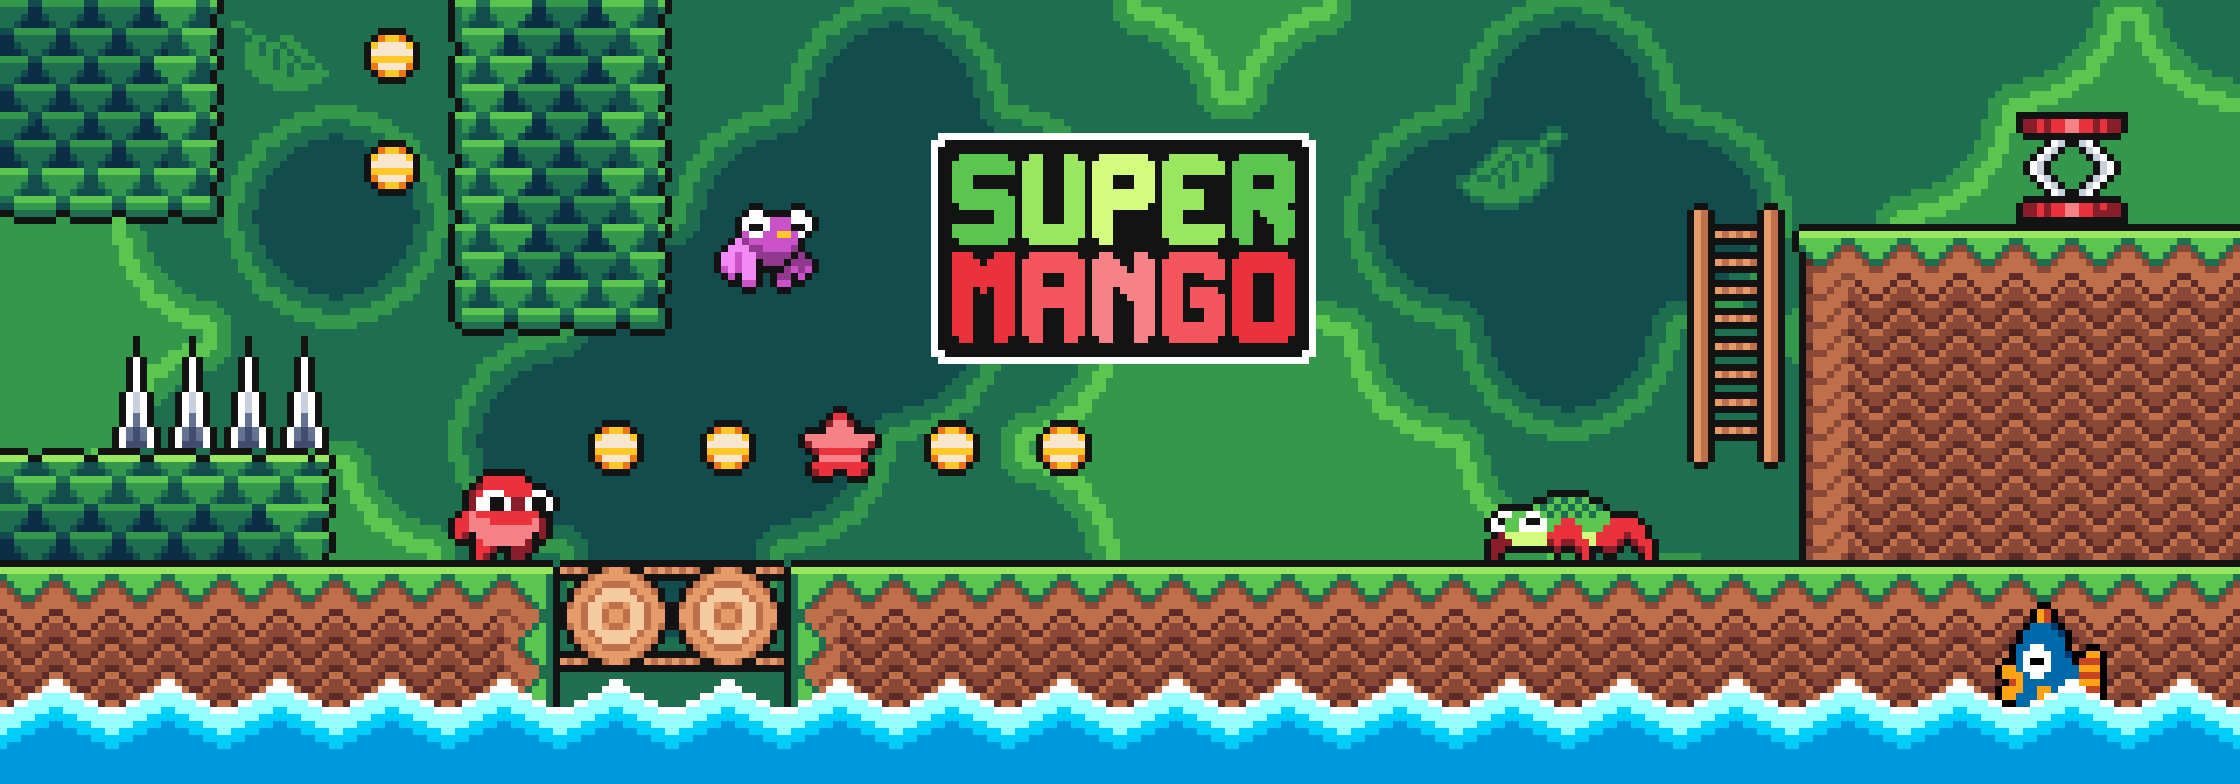 Super Mango - 2D Pixelart Platformer Asset Pack(16x16)